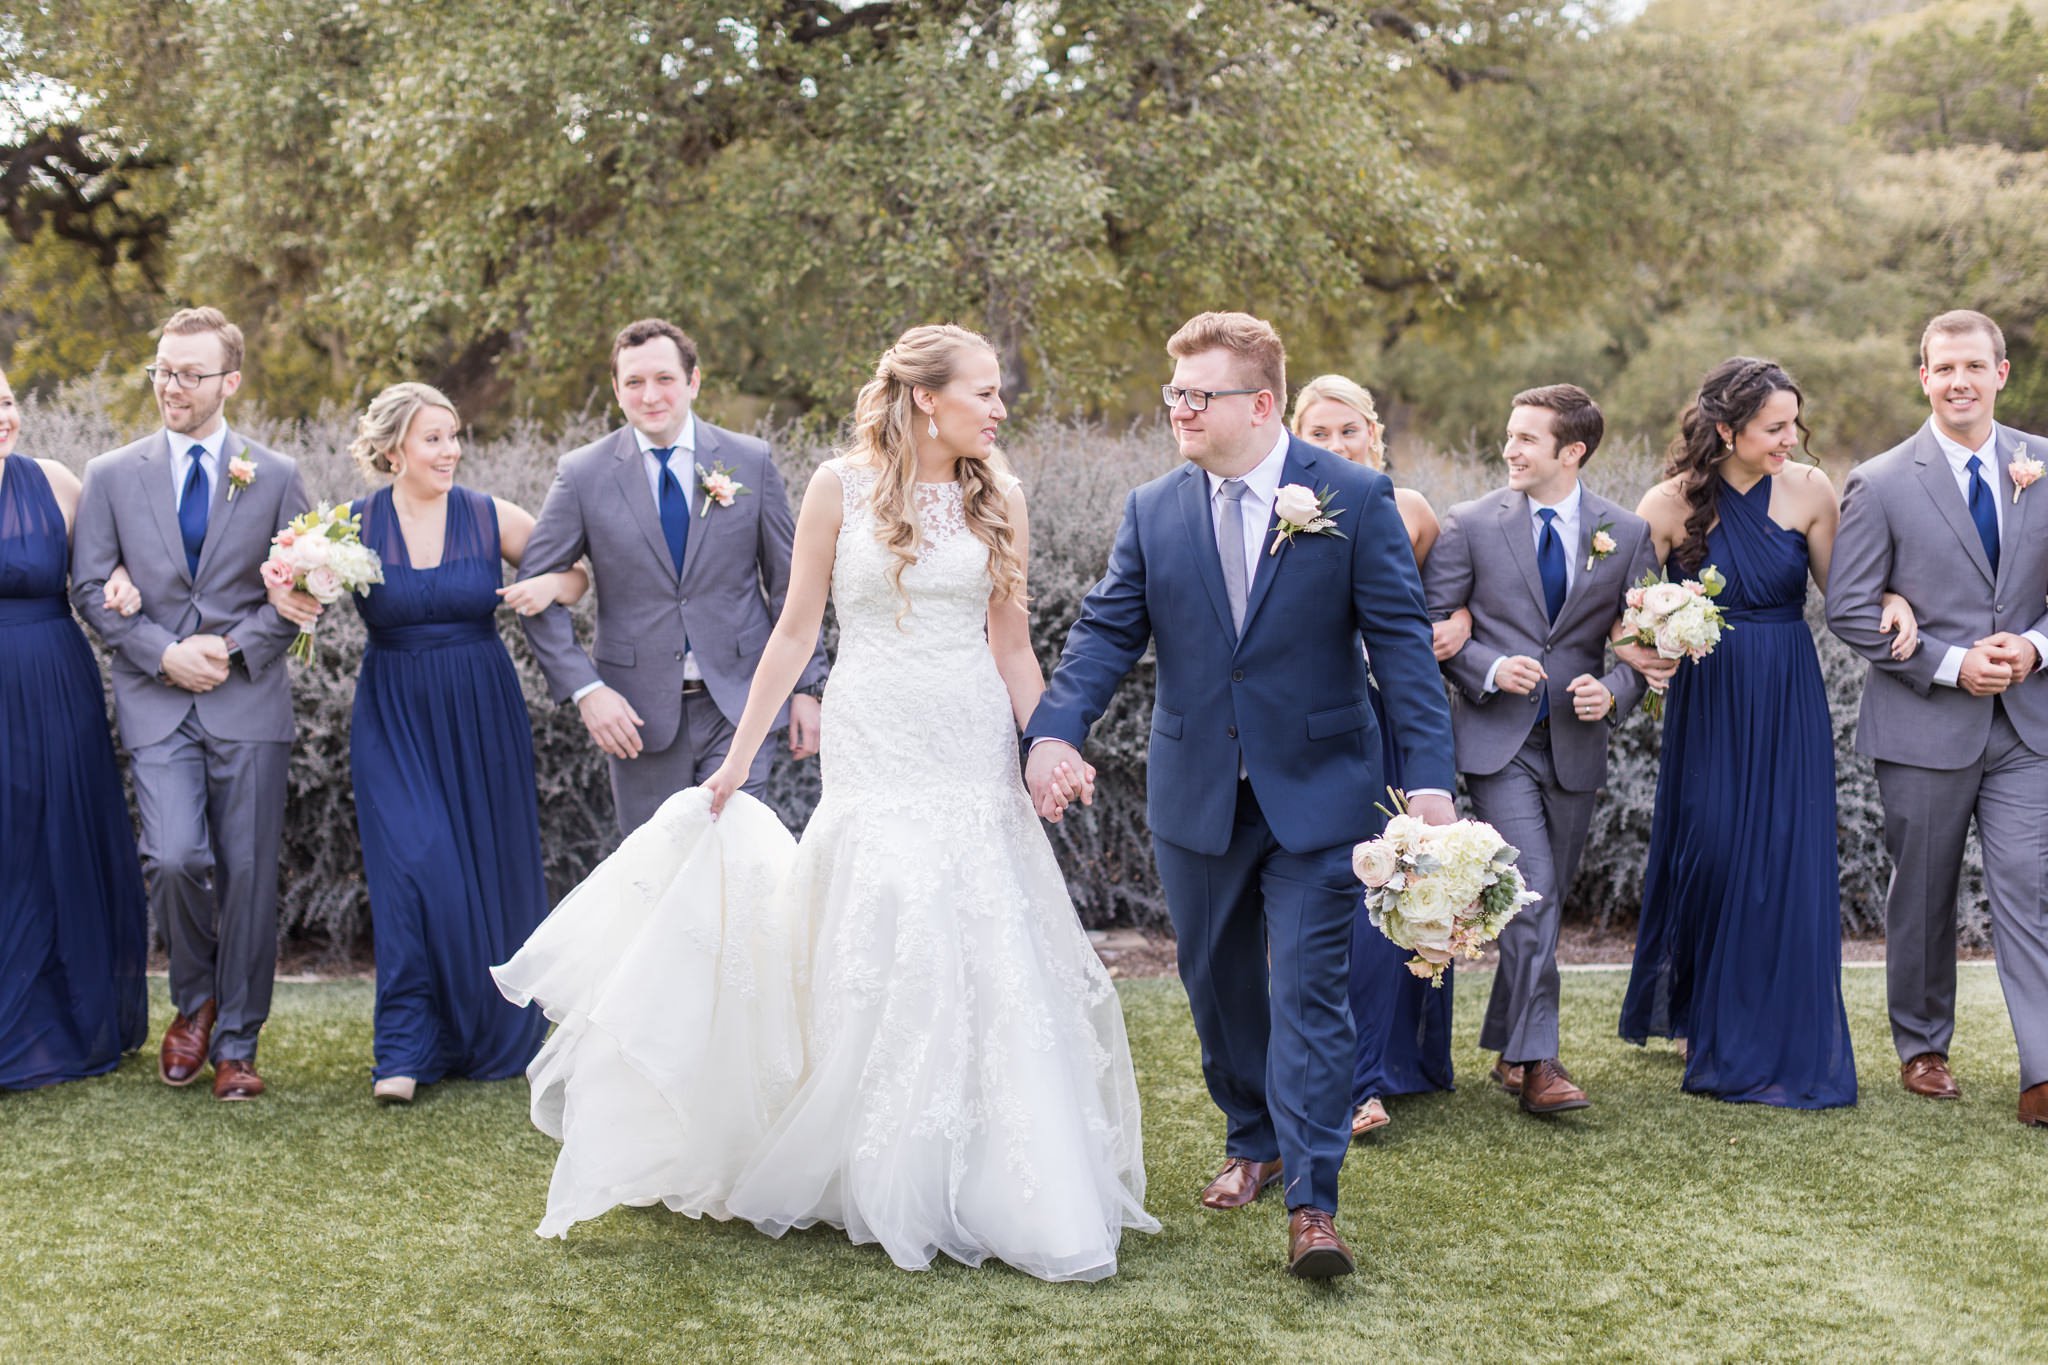 A Navy & Blush Wedding at Kendall Plantation | Nina & Gerard - Dawn ...